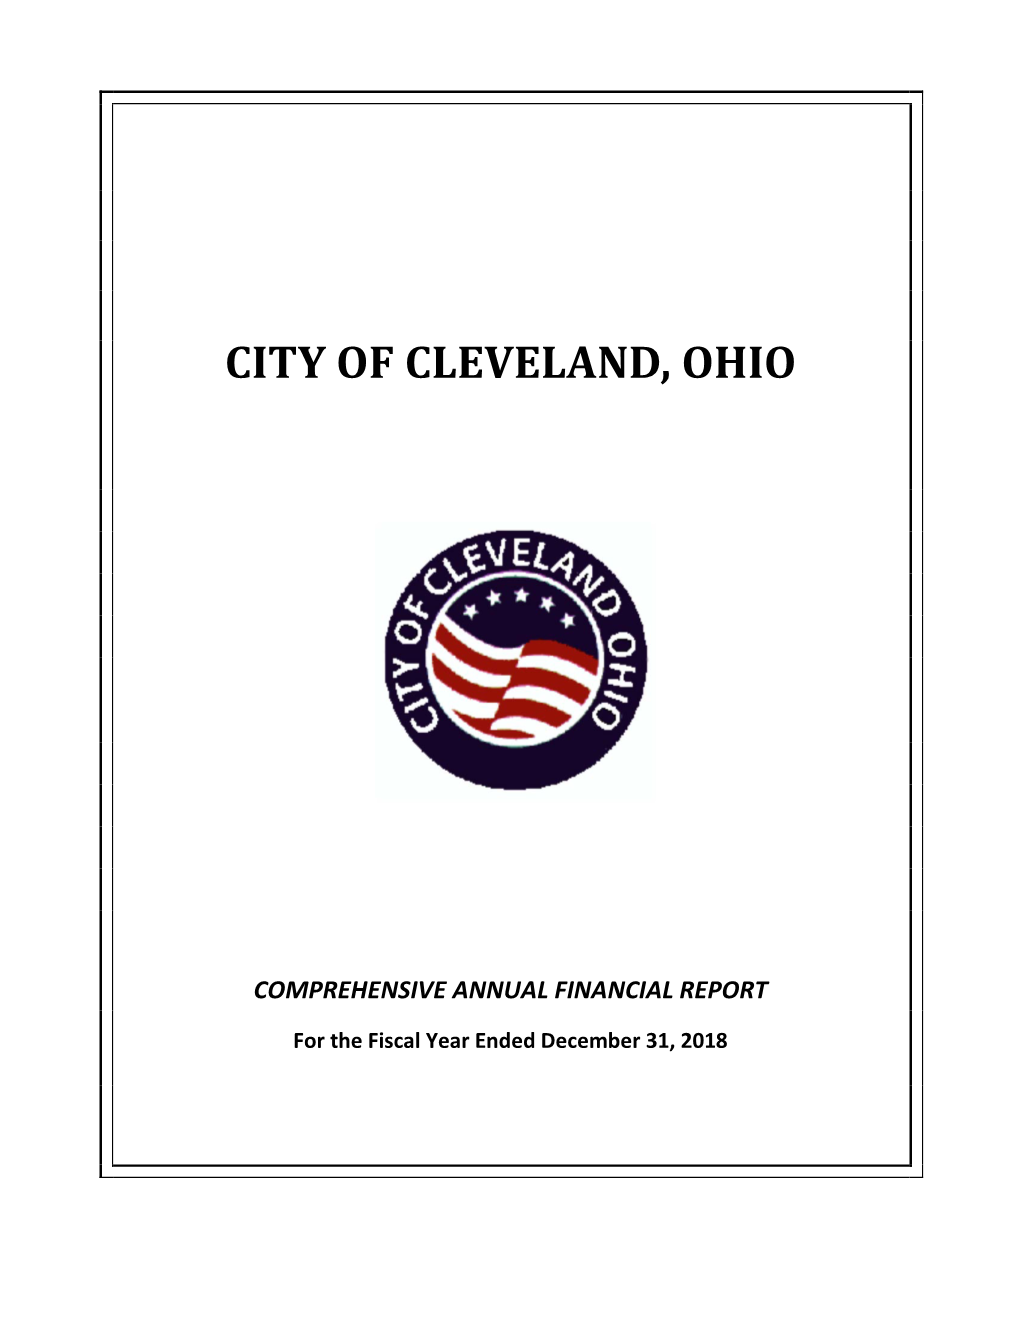 City of Cleveland, Ohio